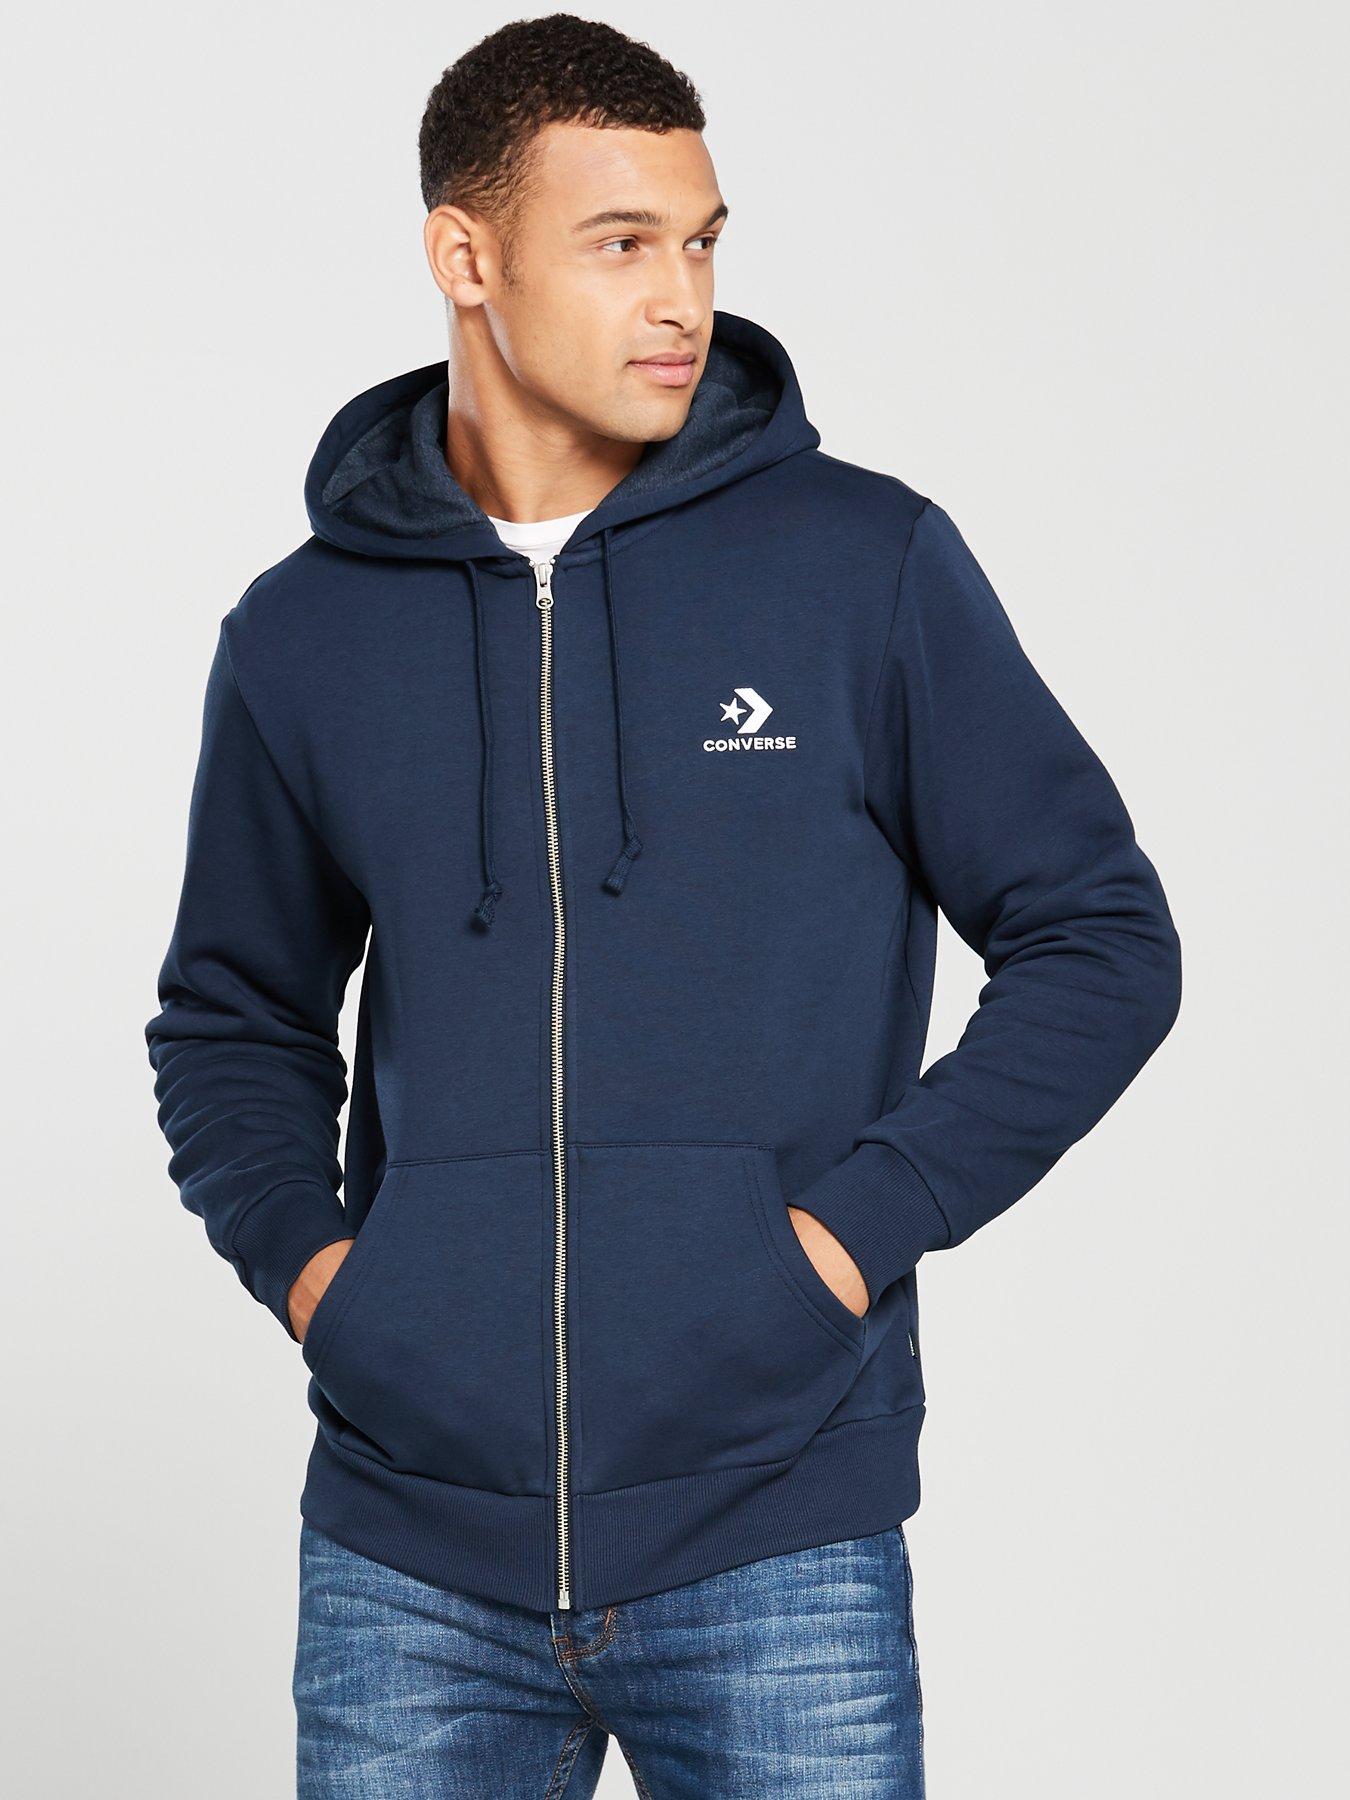 mens converse grey zip hoodie